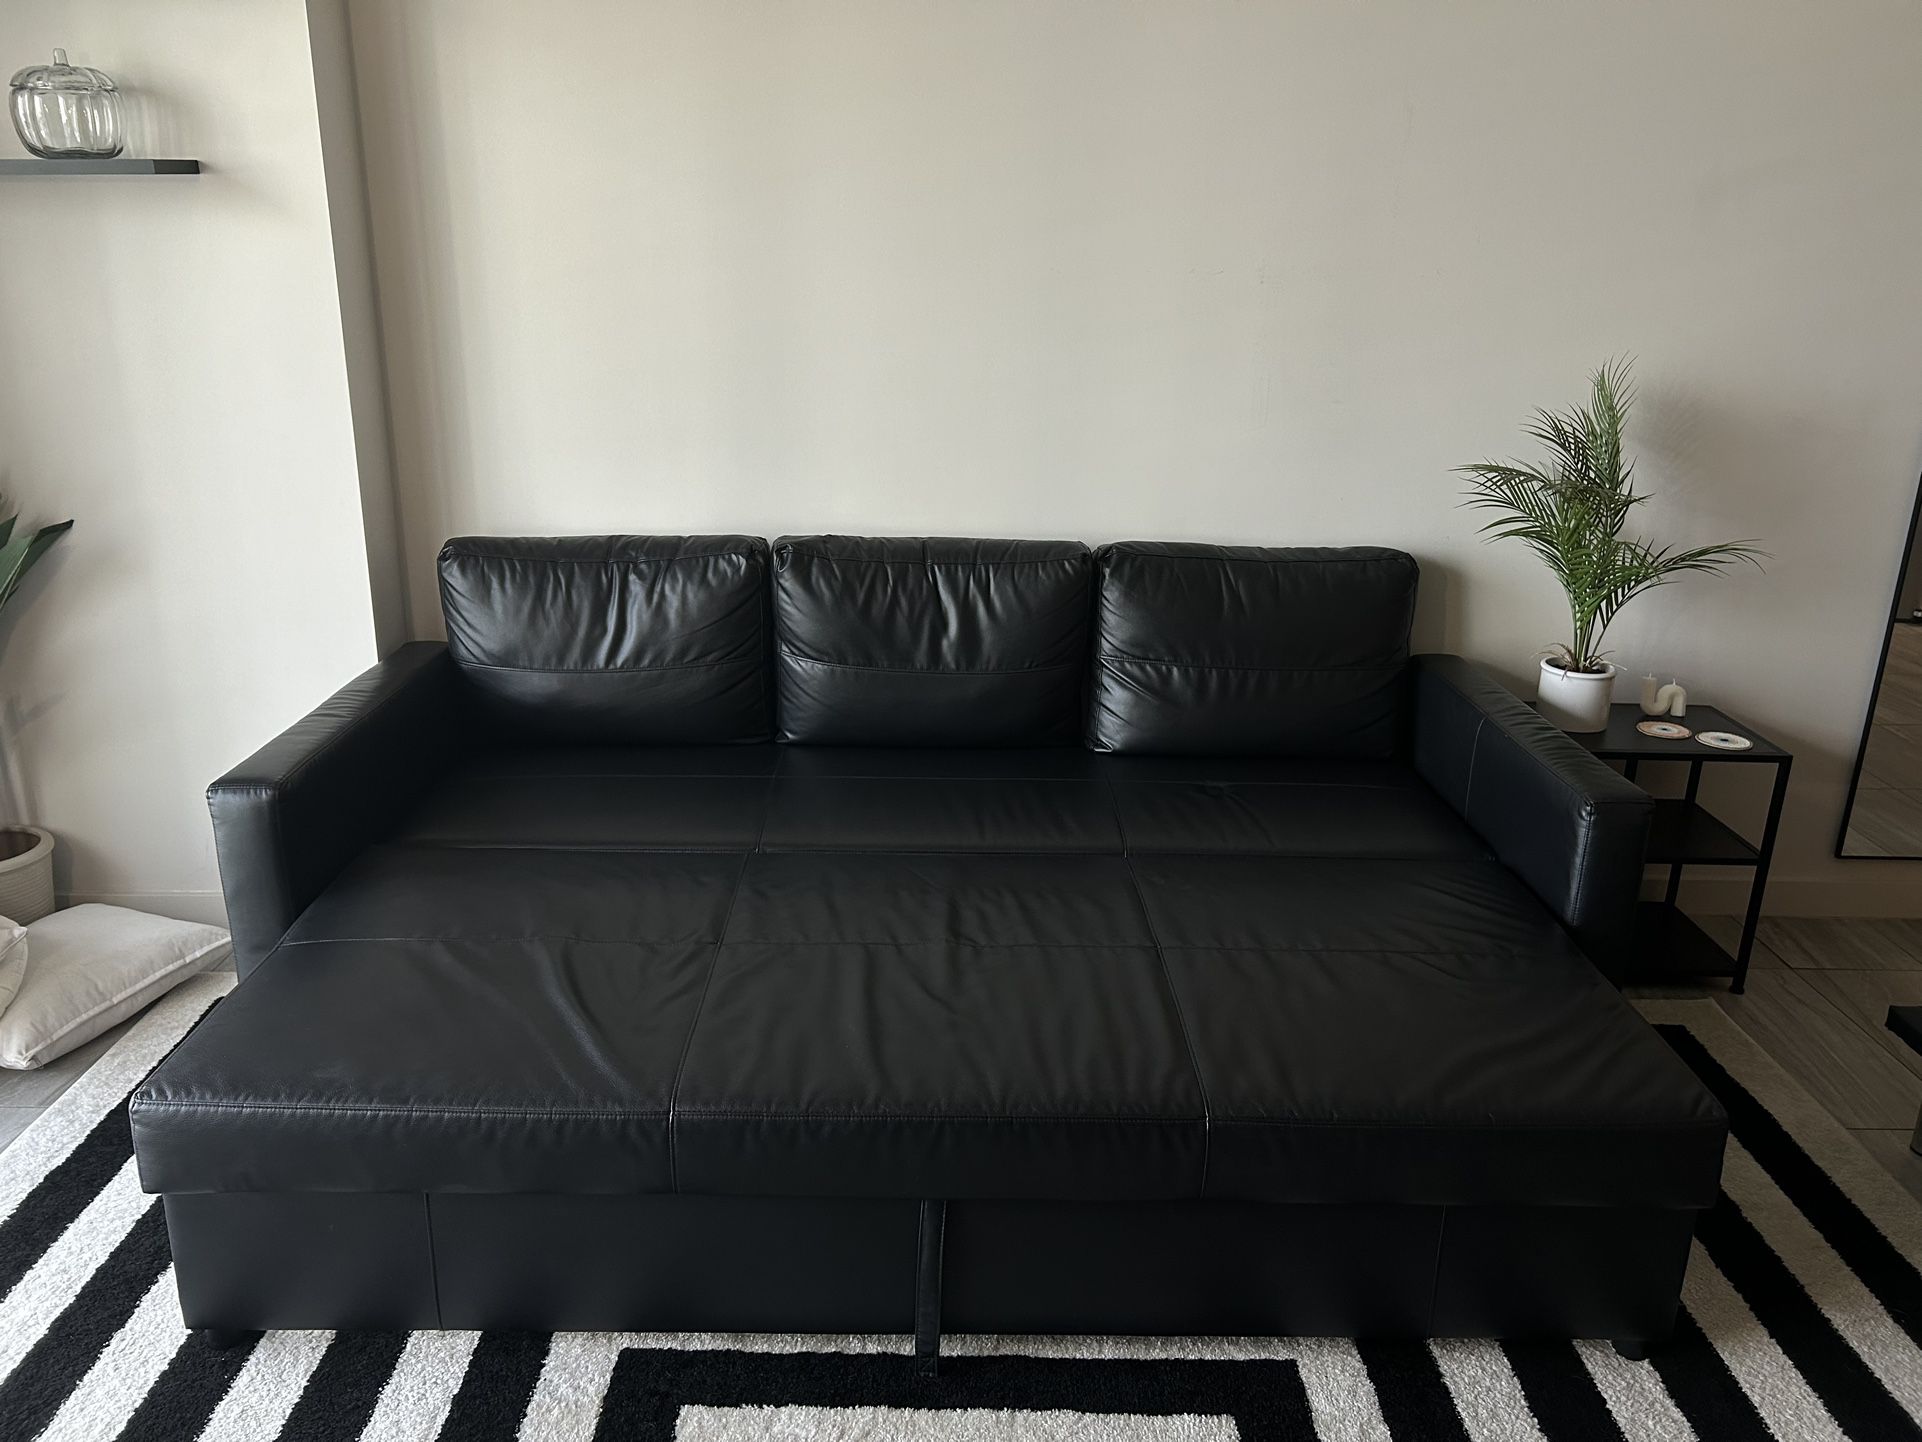 IKEA Friheten Sleeper Sofa Black 